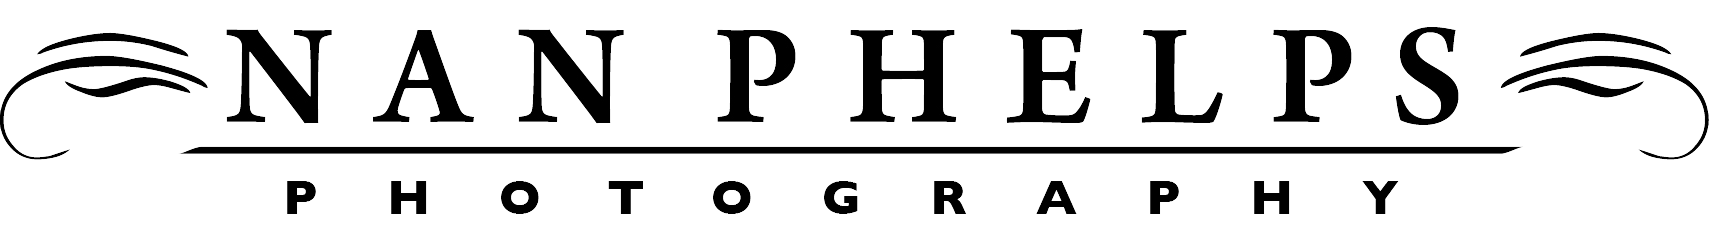 Nan Phelps Photography logo